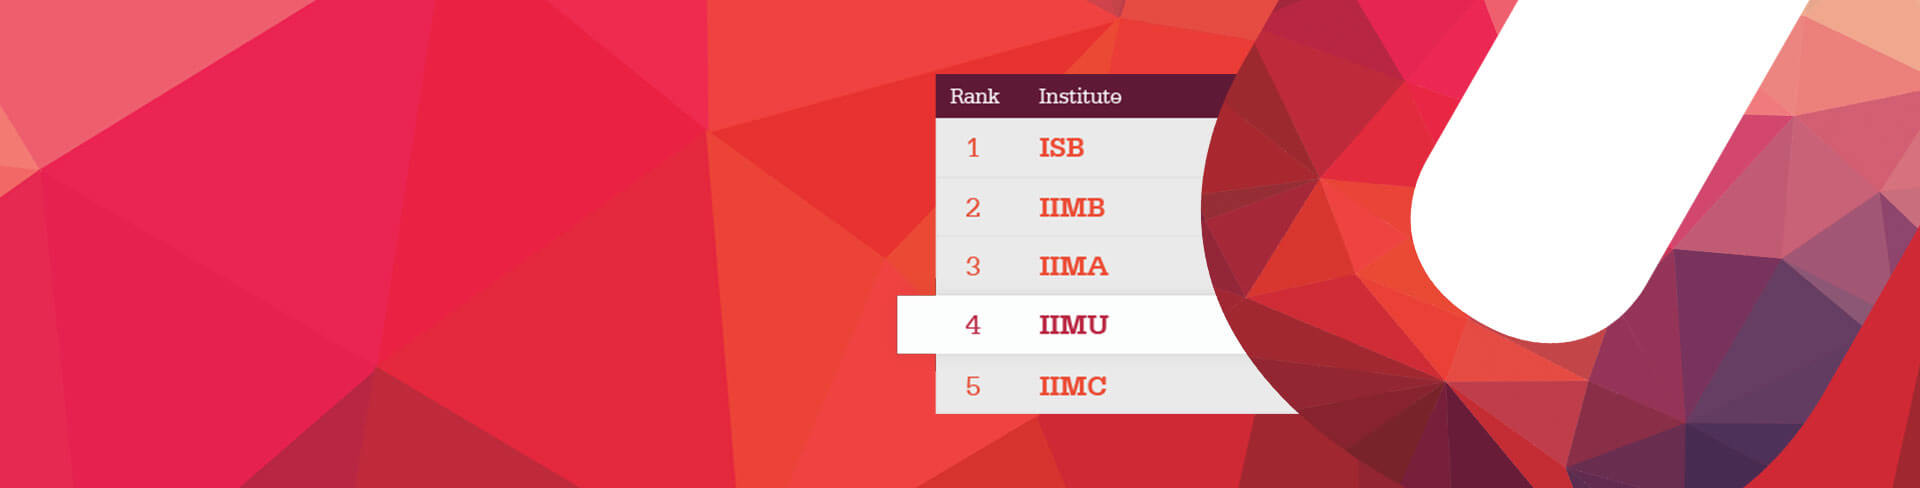 IIMU-top-5-in-research